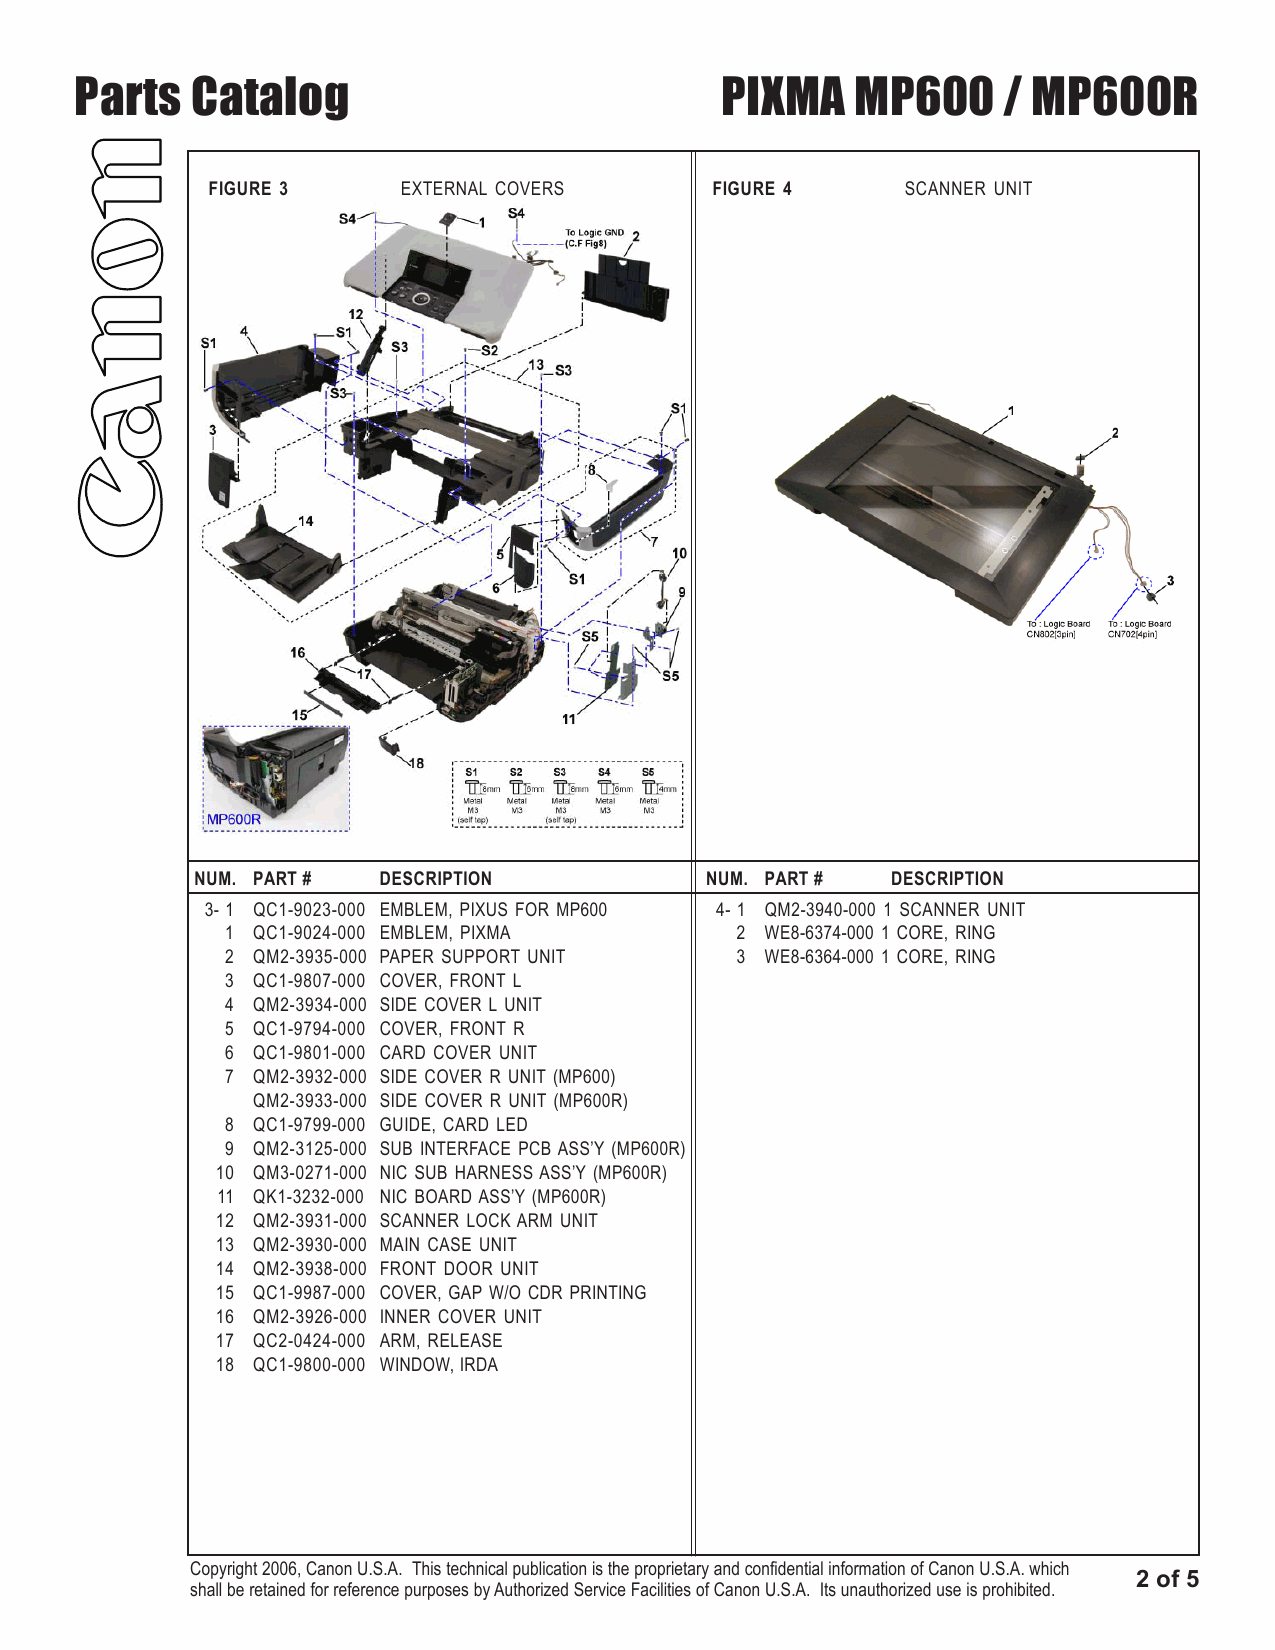 Canon PIXMA MP600 MP600R Parts Catalog Manual-3